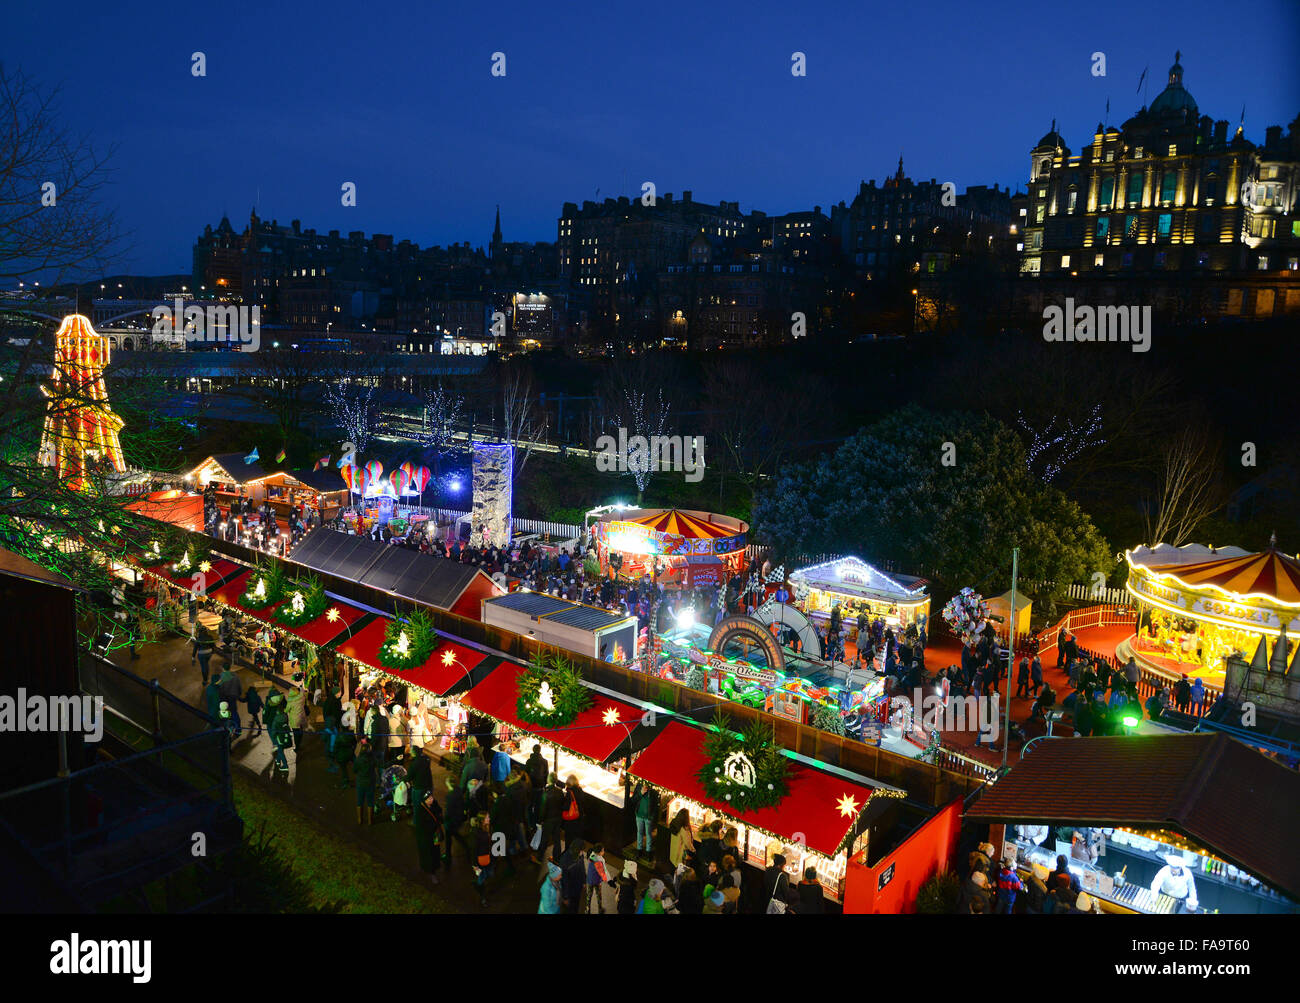 Edimburgo, el famoso Mercado de Navidad europeo Foto de stock